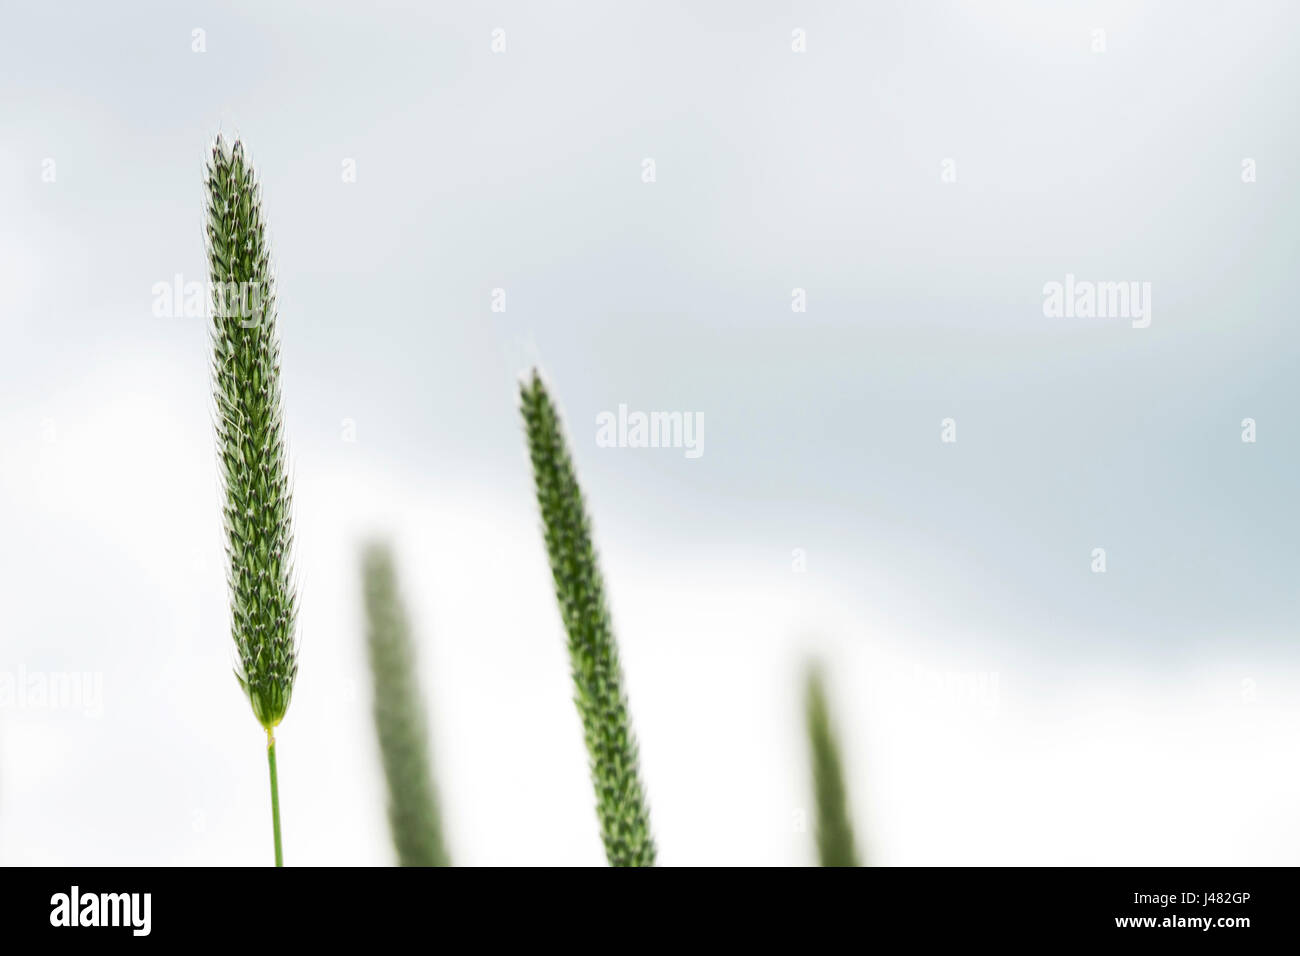 Arte fotografia macro: chiudere fino a quattro fili di erba con i giunchi contro quasi sfondo bianco Foto Stock